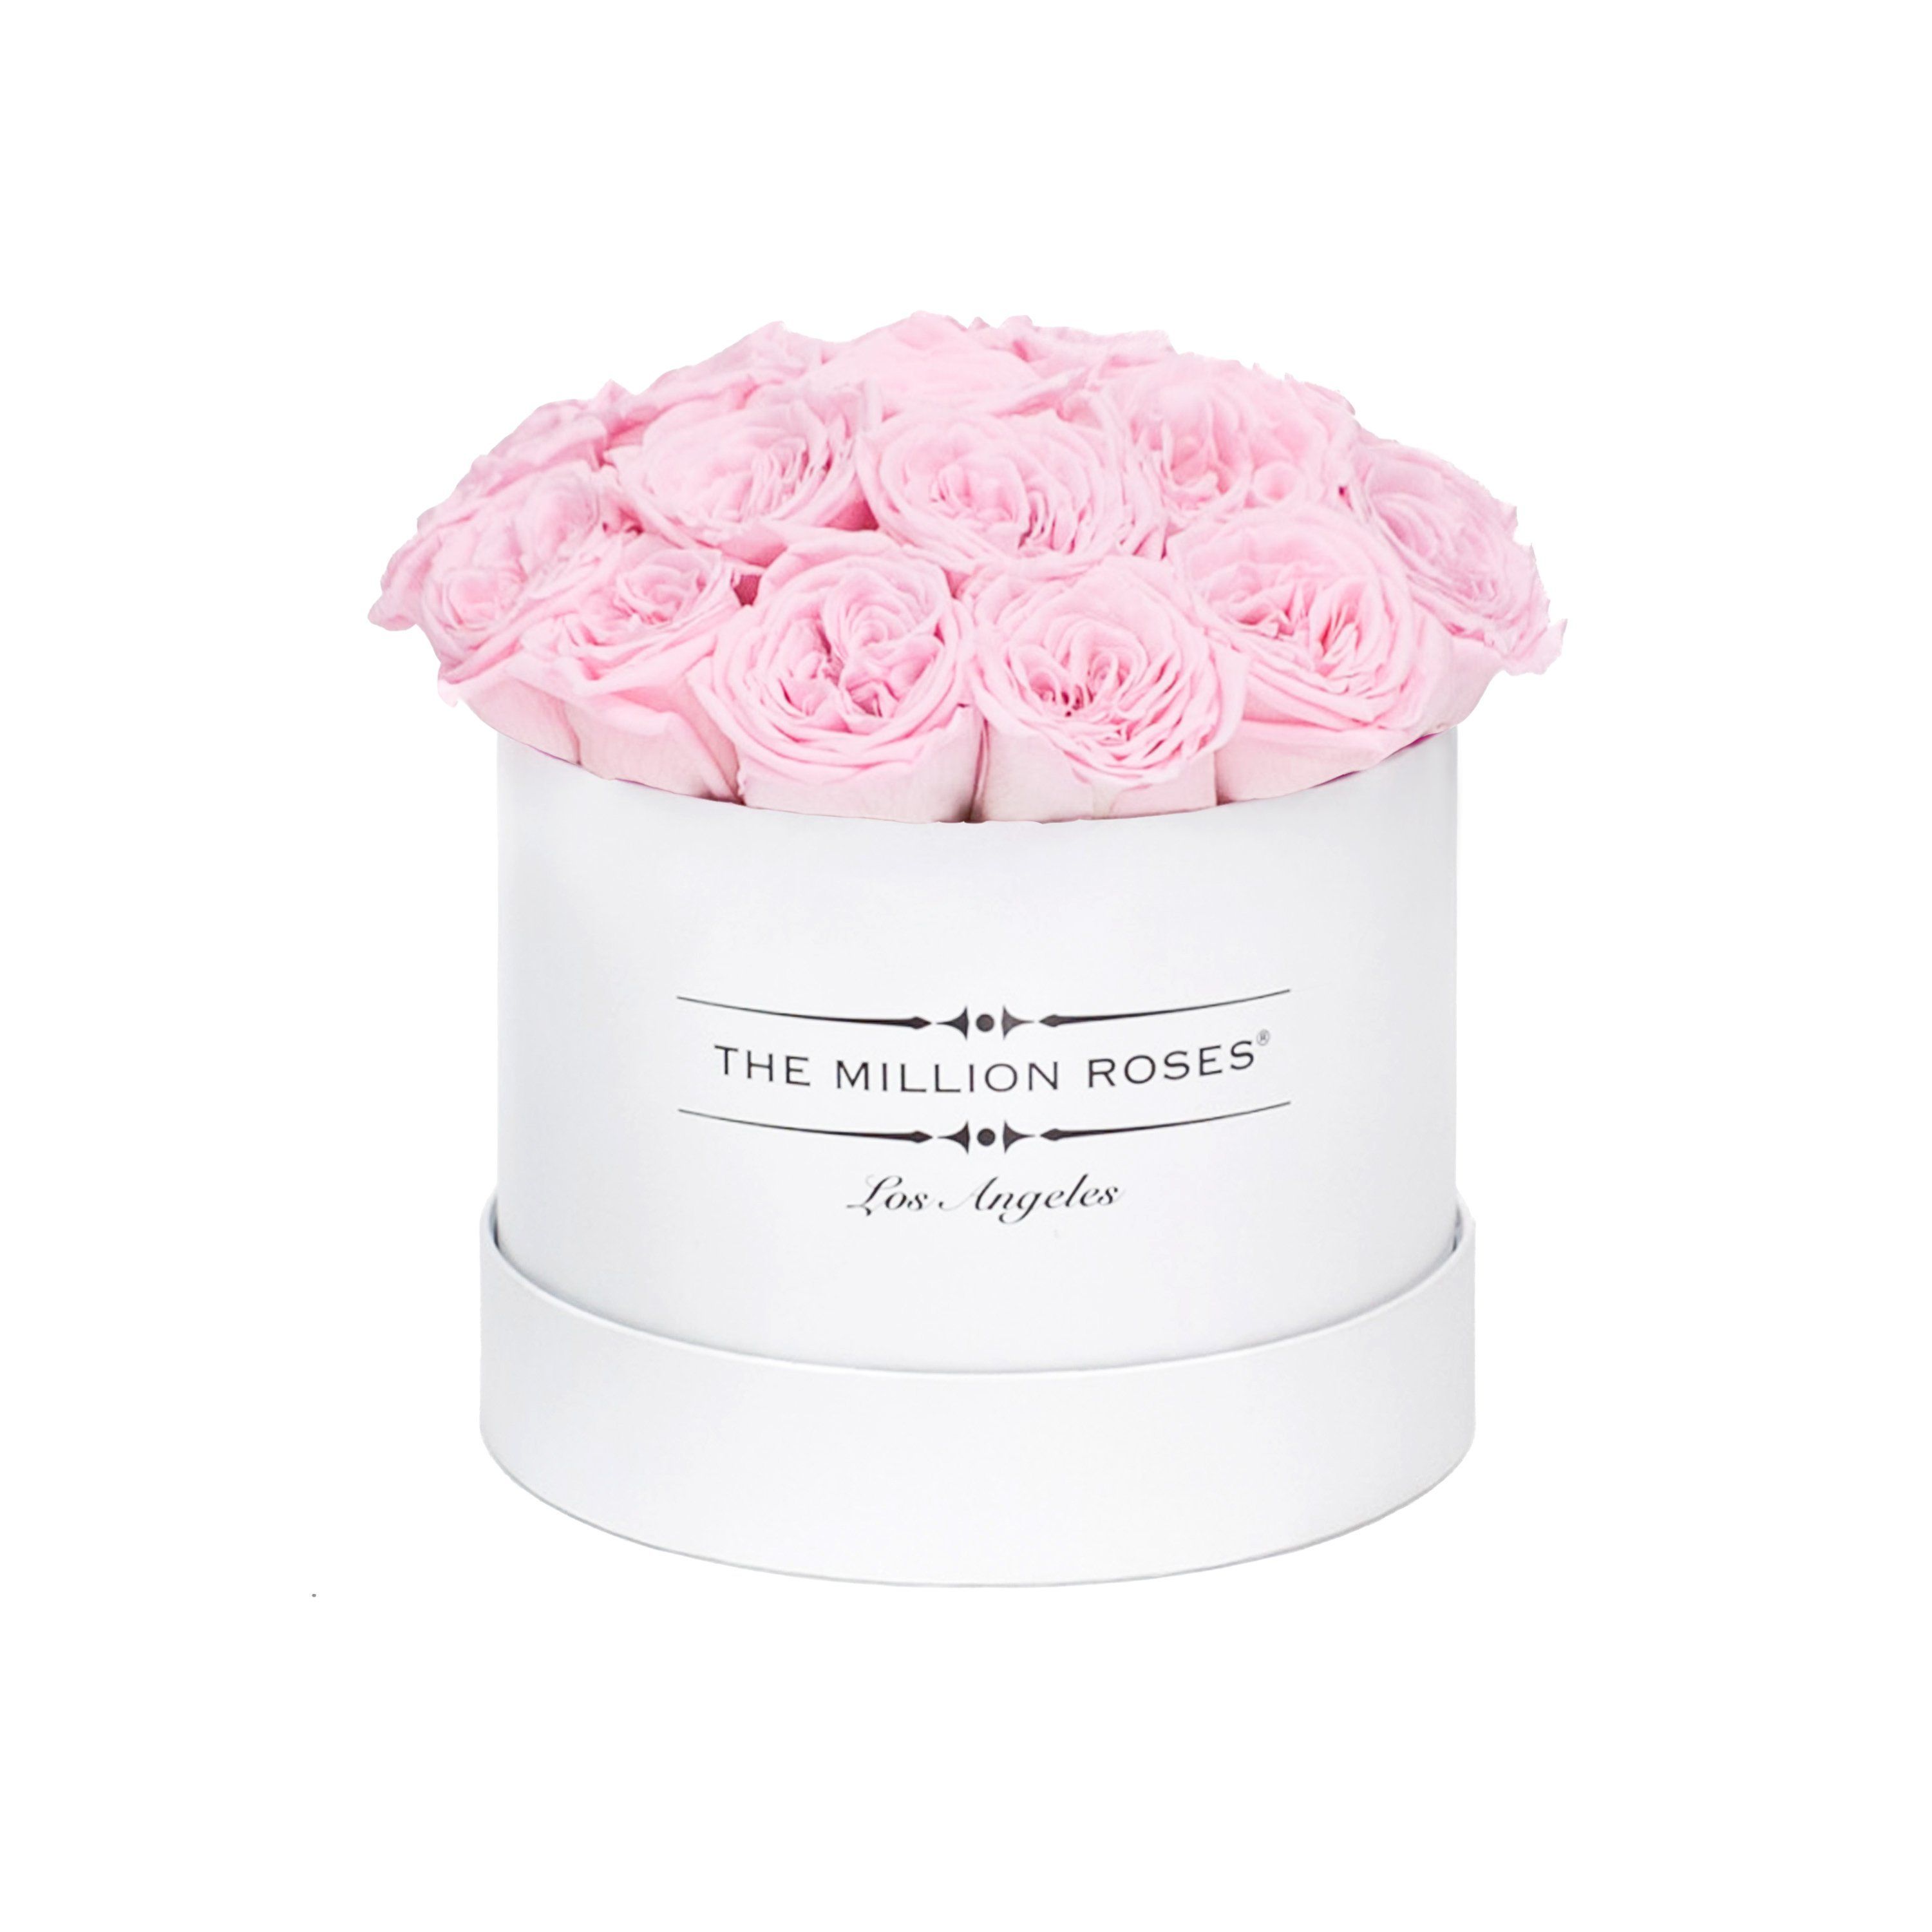 classic round box - white - light-pink GARDEN roses eternity garden roses - the million roses